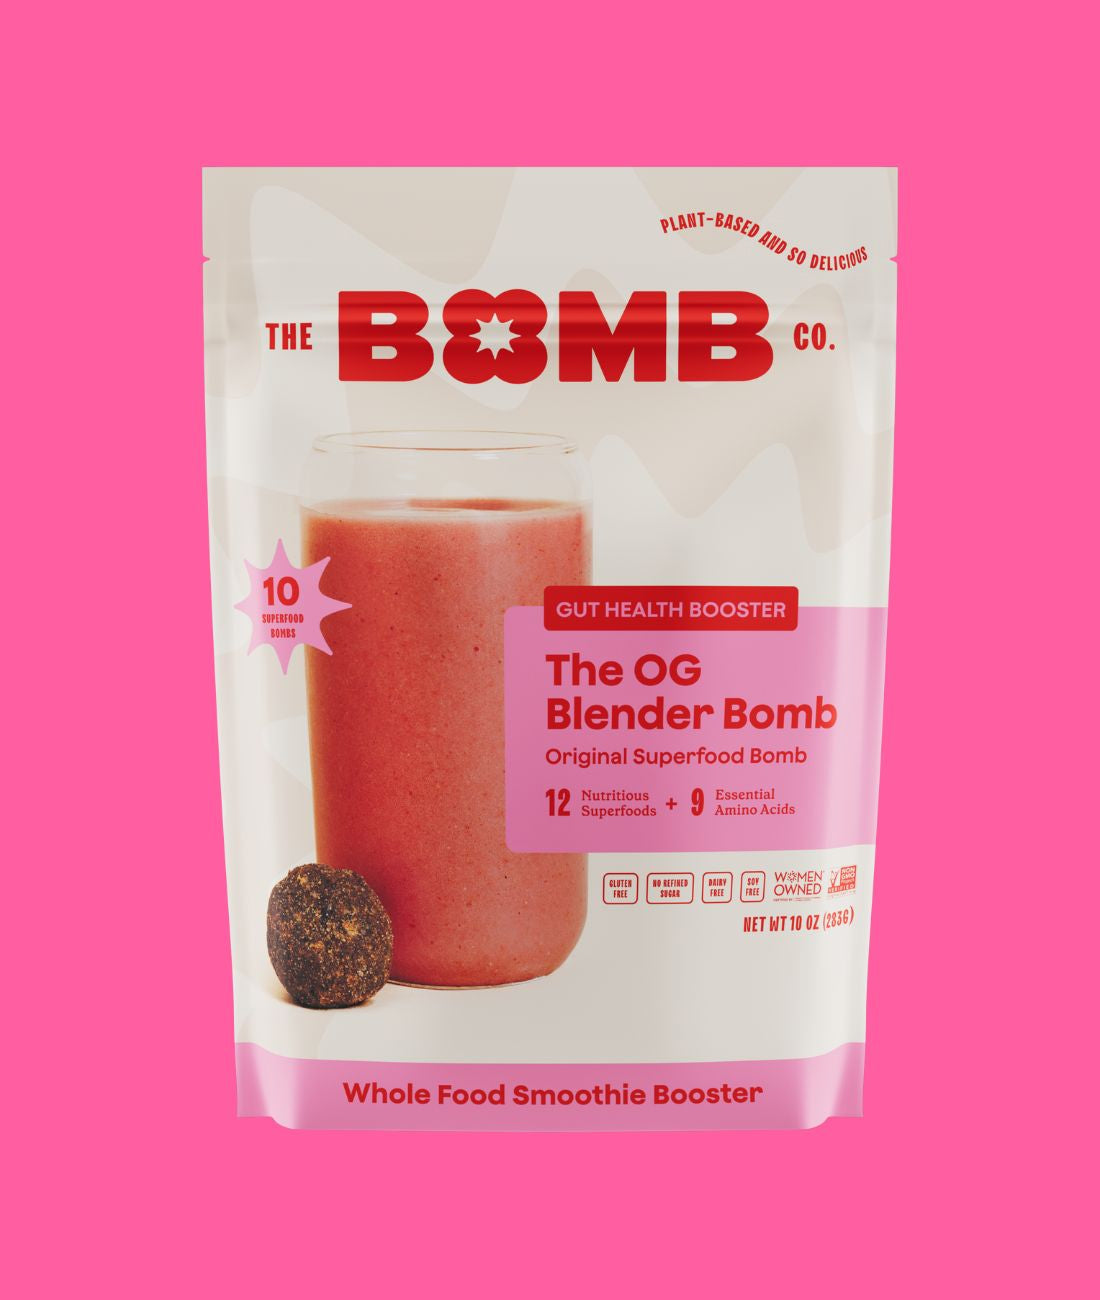 The OG Blender Bomb